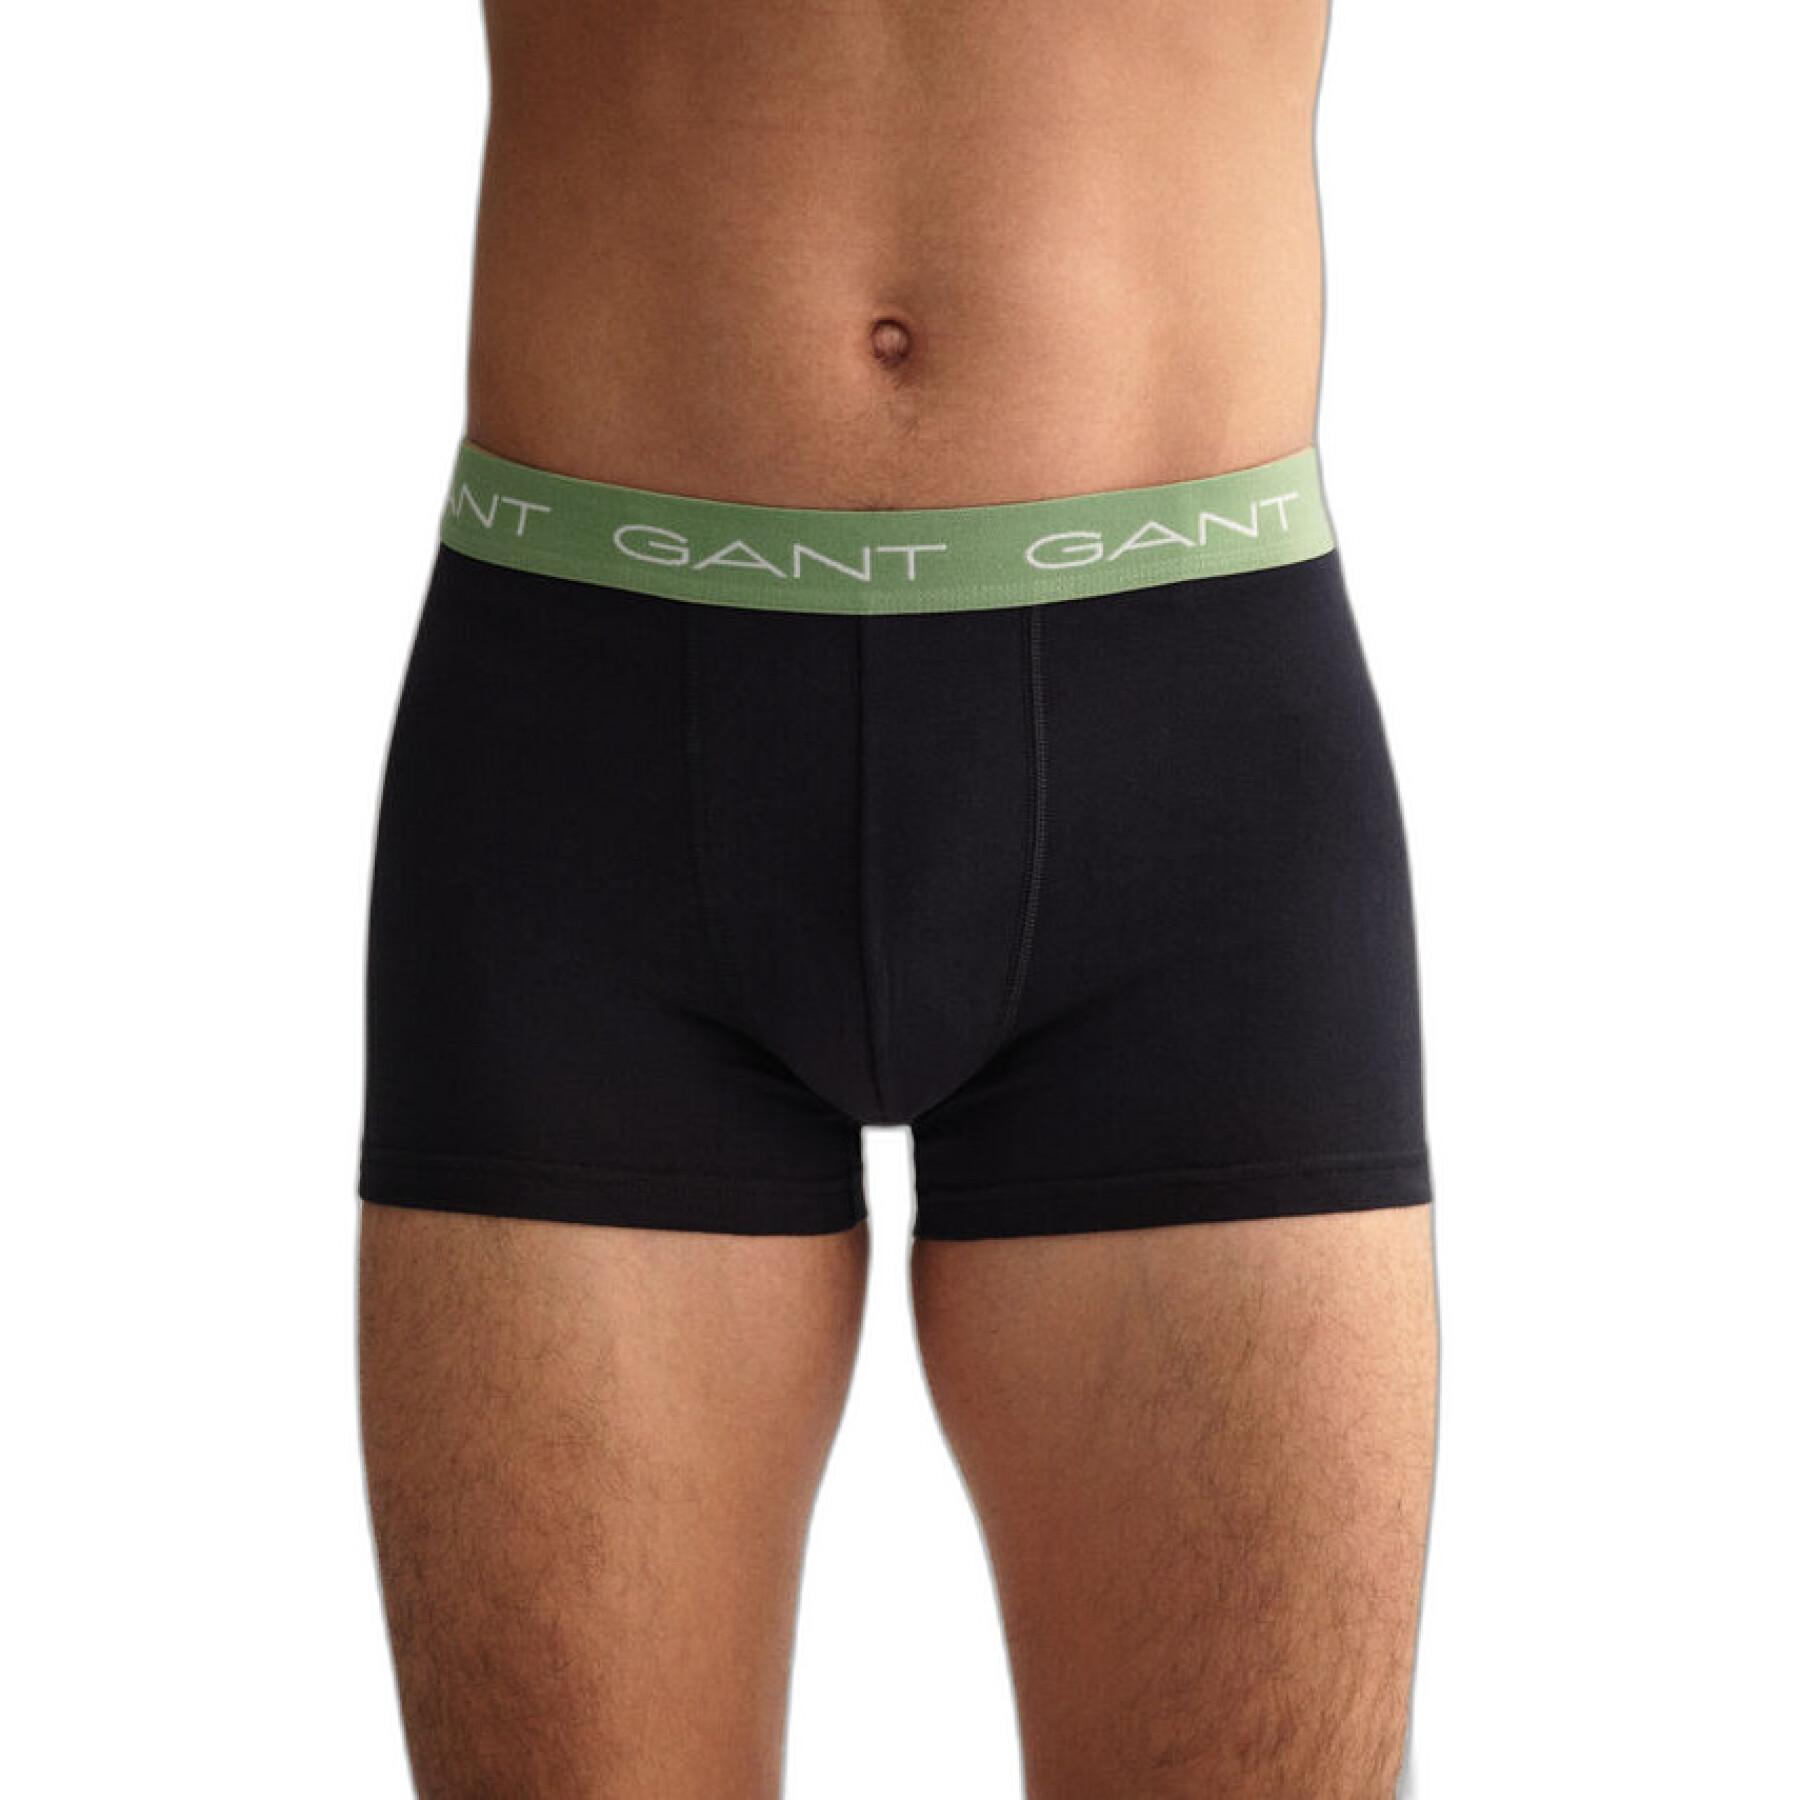 Set of 3 boxer shorts Gant